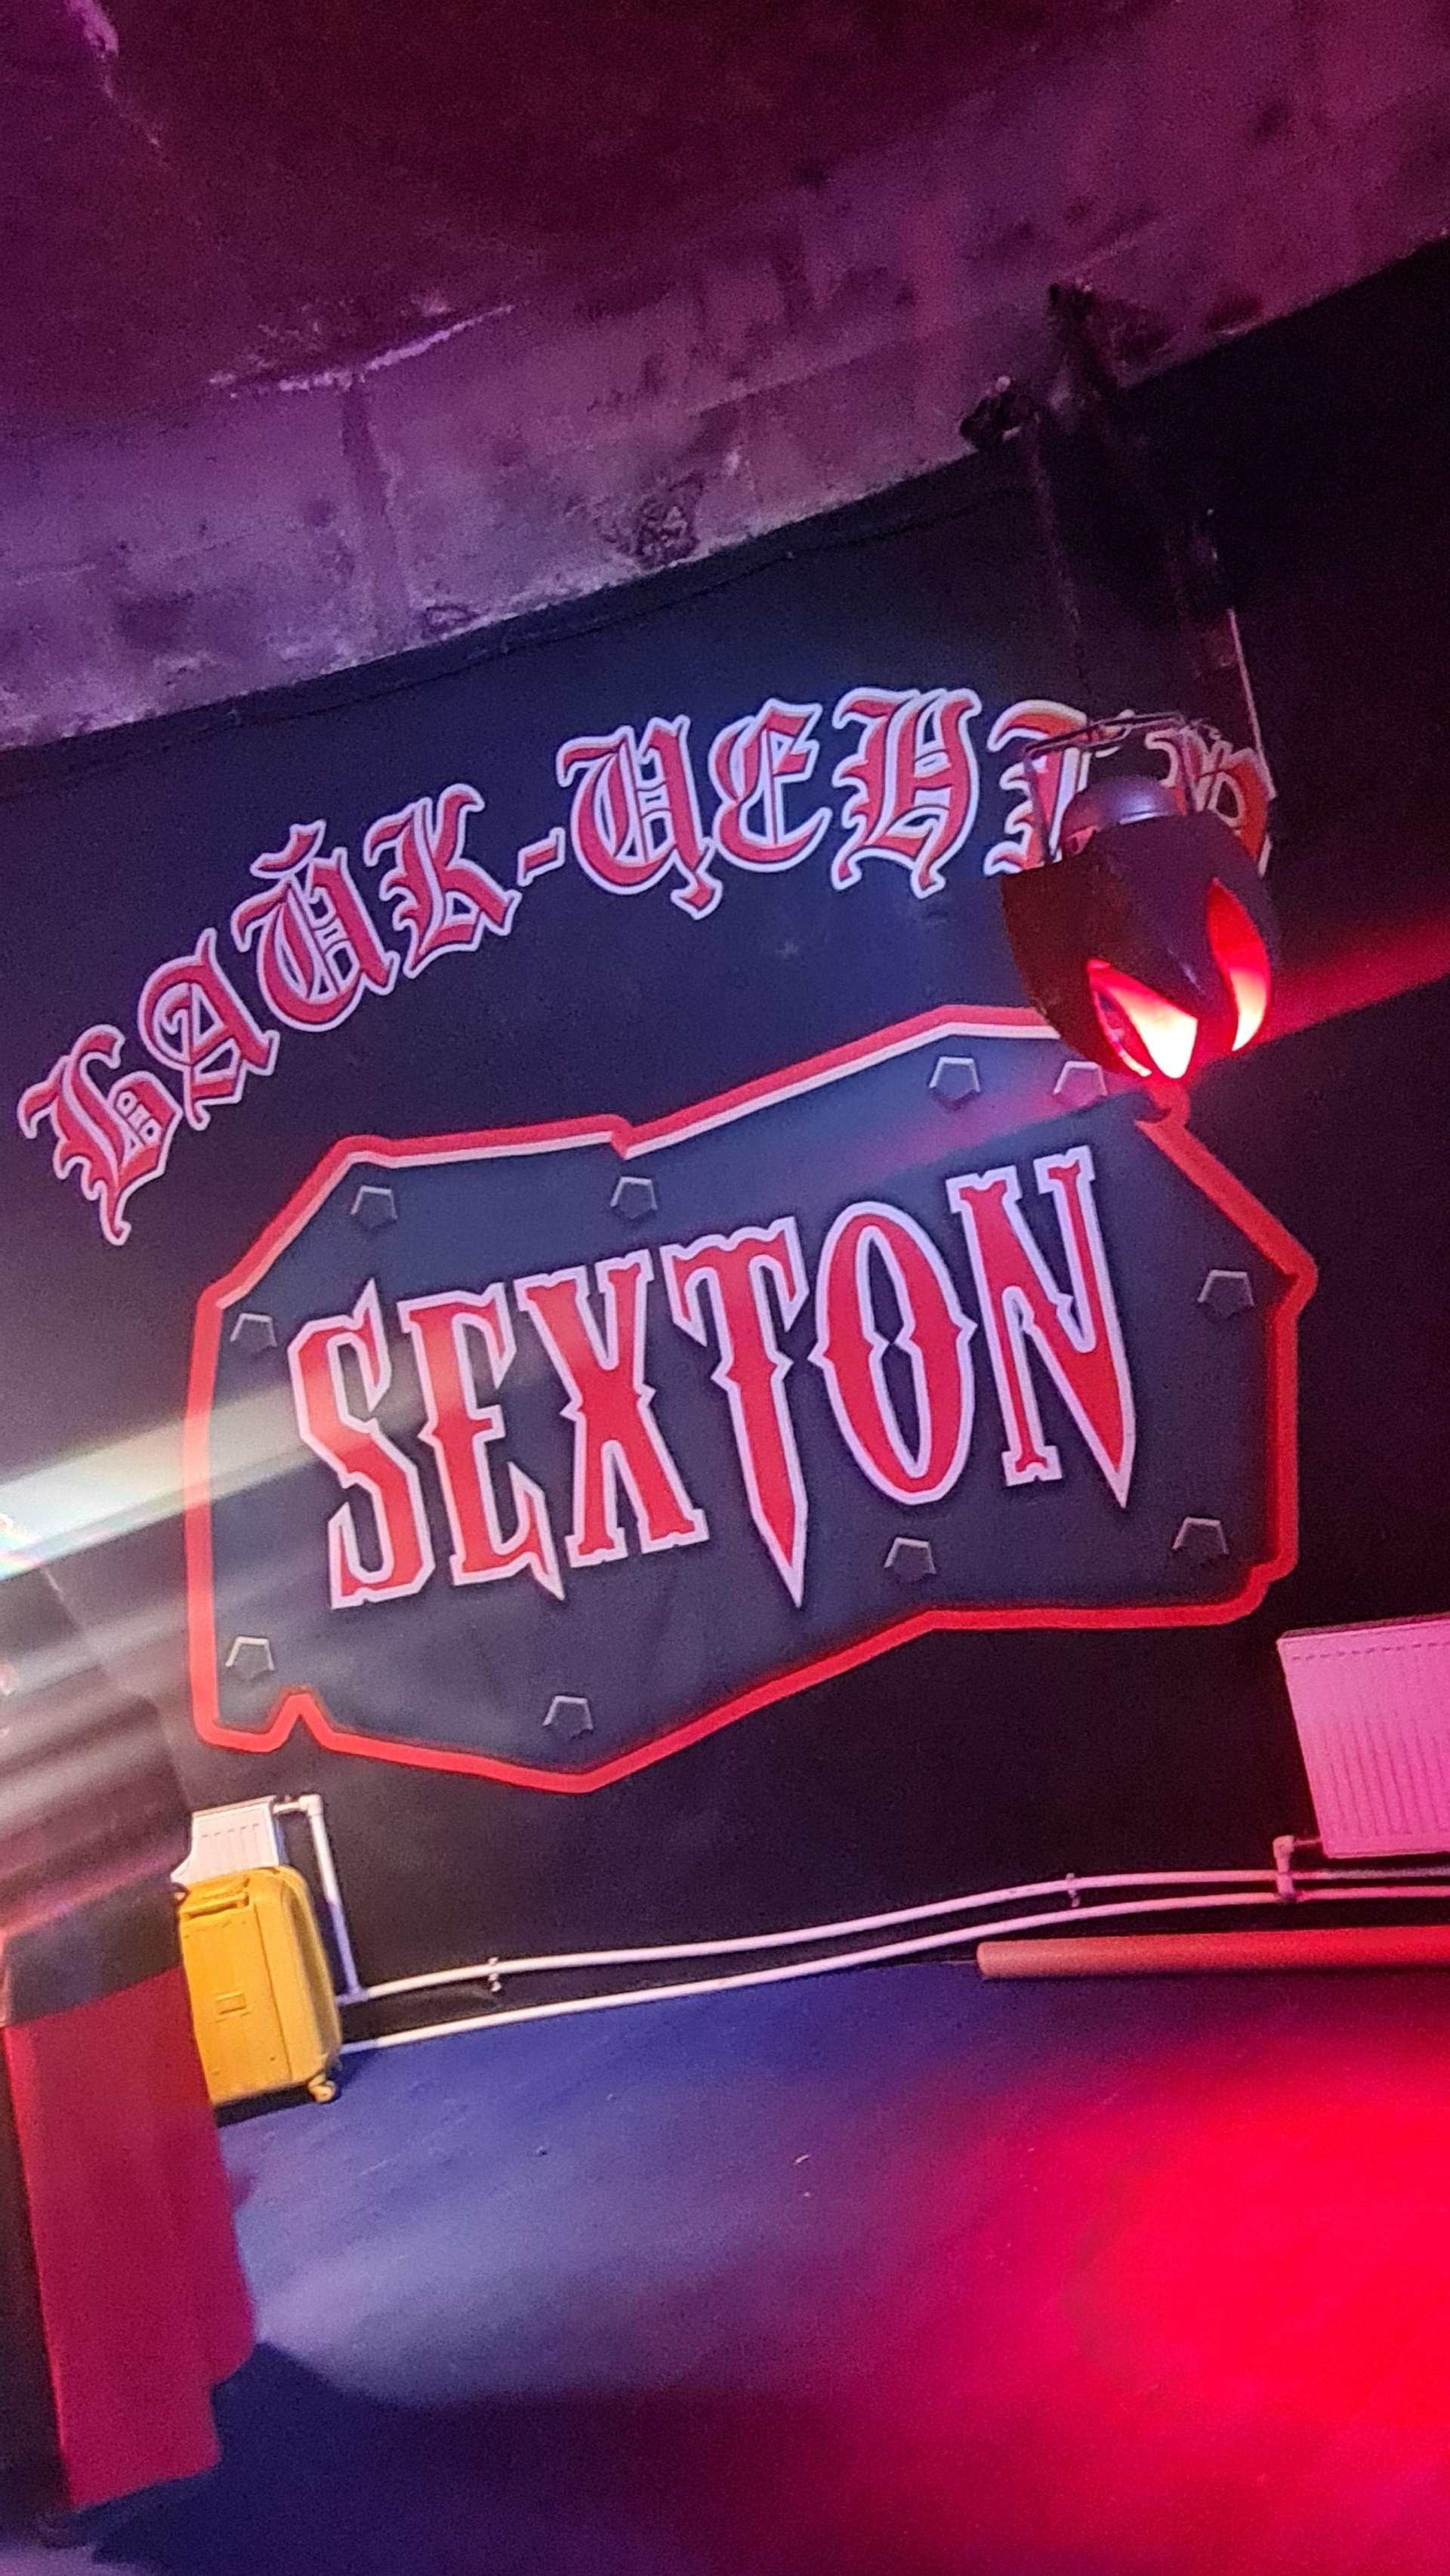 Международный Байк-Центр ресторан бар ночной клуб Sexton аренда в городе Москва